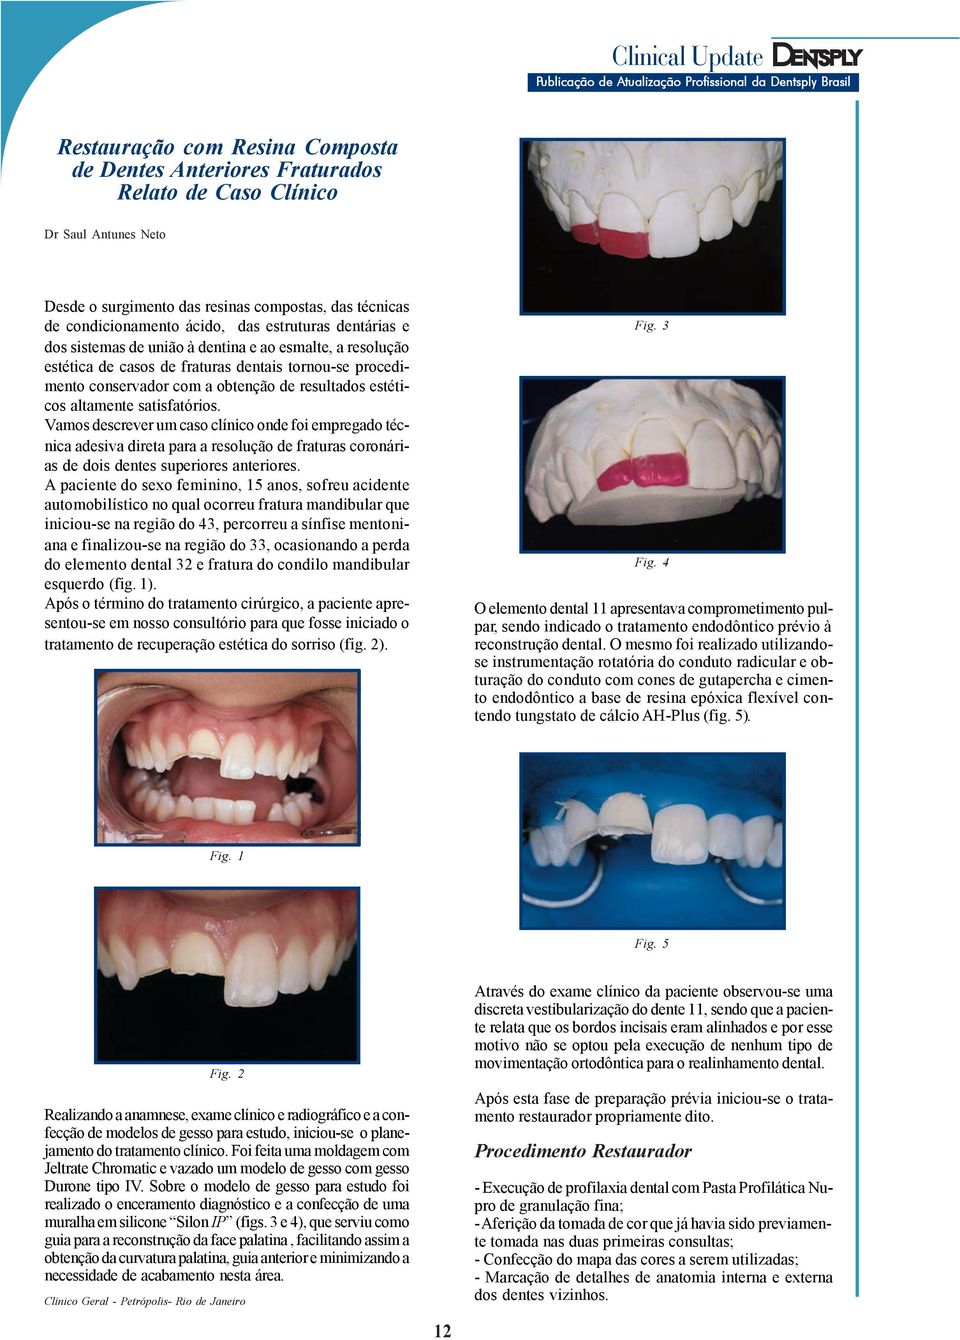 altamente satisfatórios. Vamos descrever um caso clínico onde foi empregado técnica adesiva direta para a resolução de fraturas coronárias de dois dentes superiores anteriores.